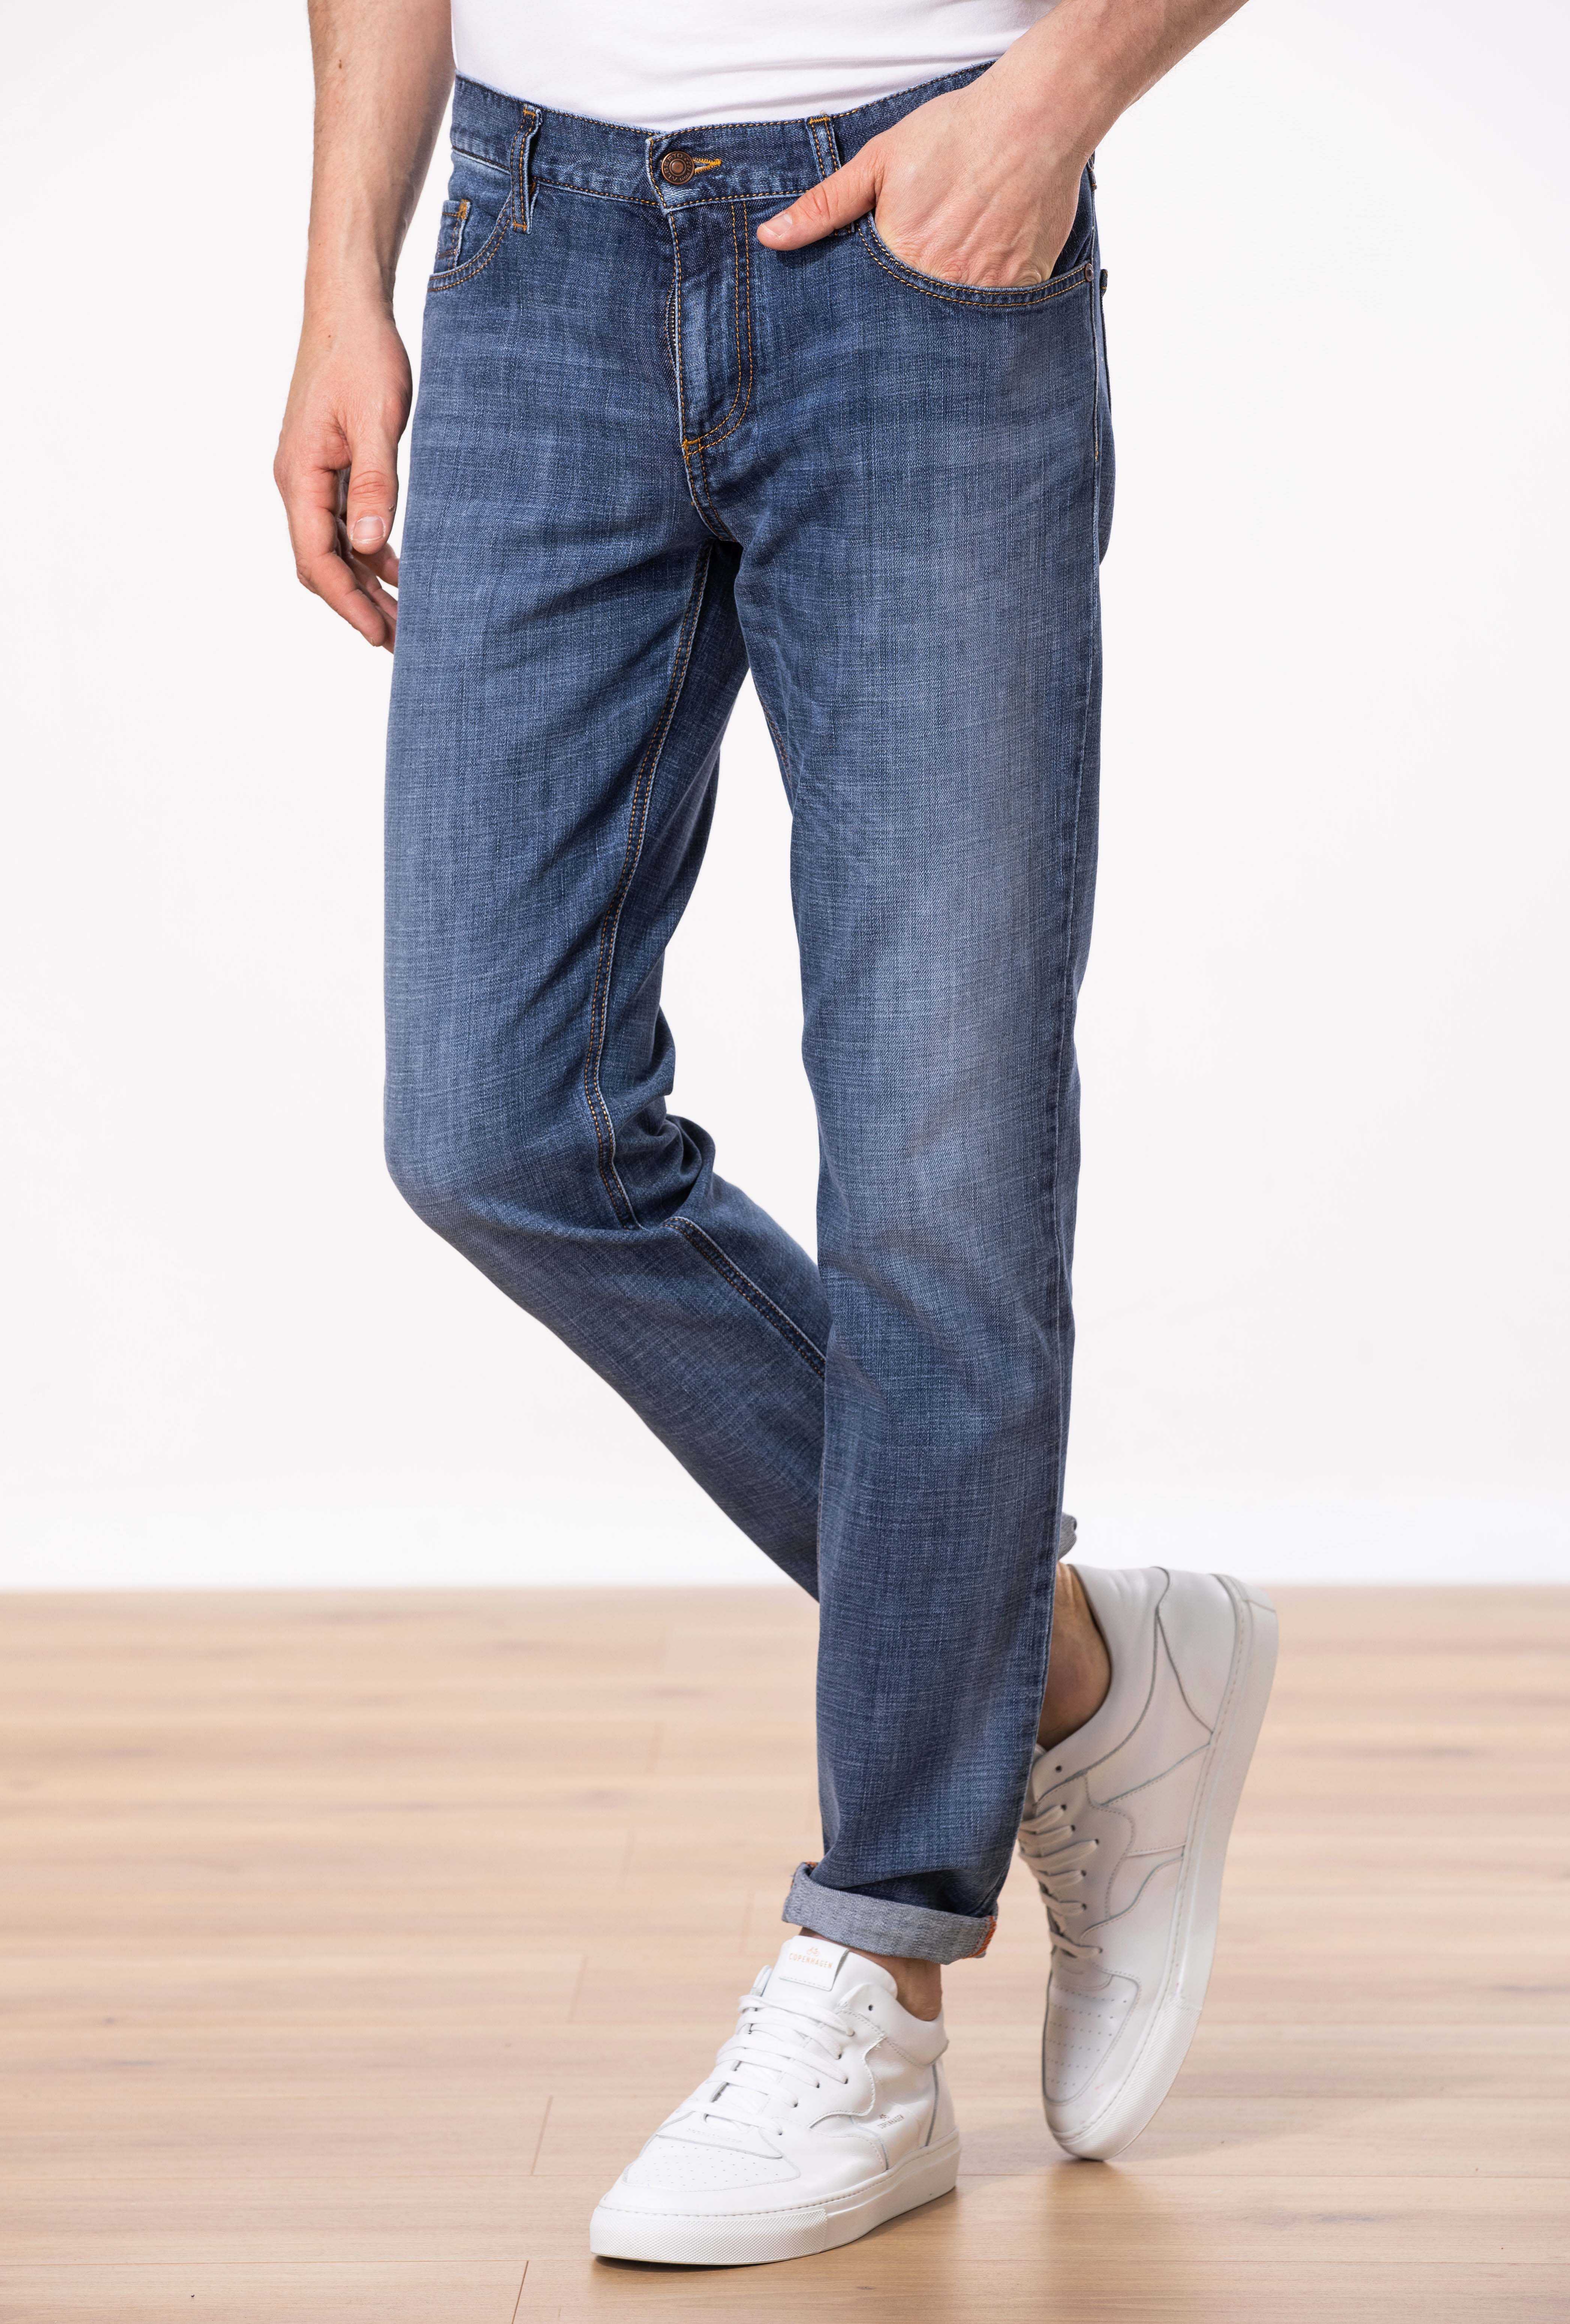 ALBERTO Jeans PIPE 01848780 kaufen WÖHRL